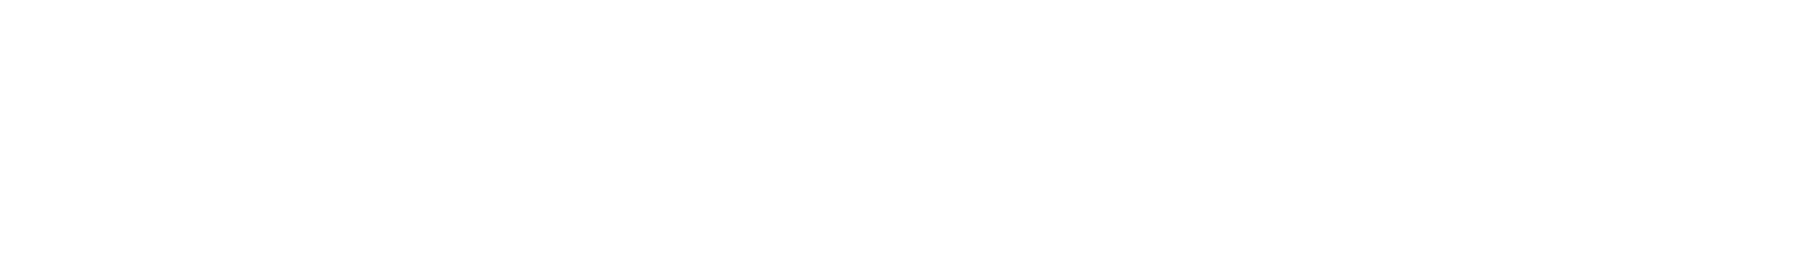 Akanema dévoile son logo définitivement humain